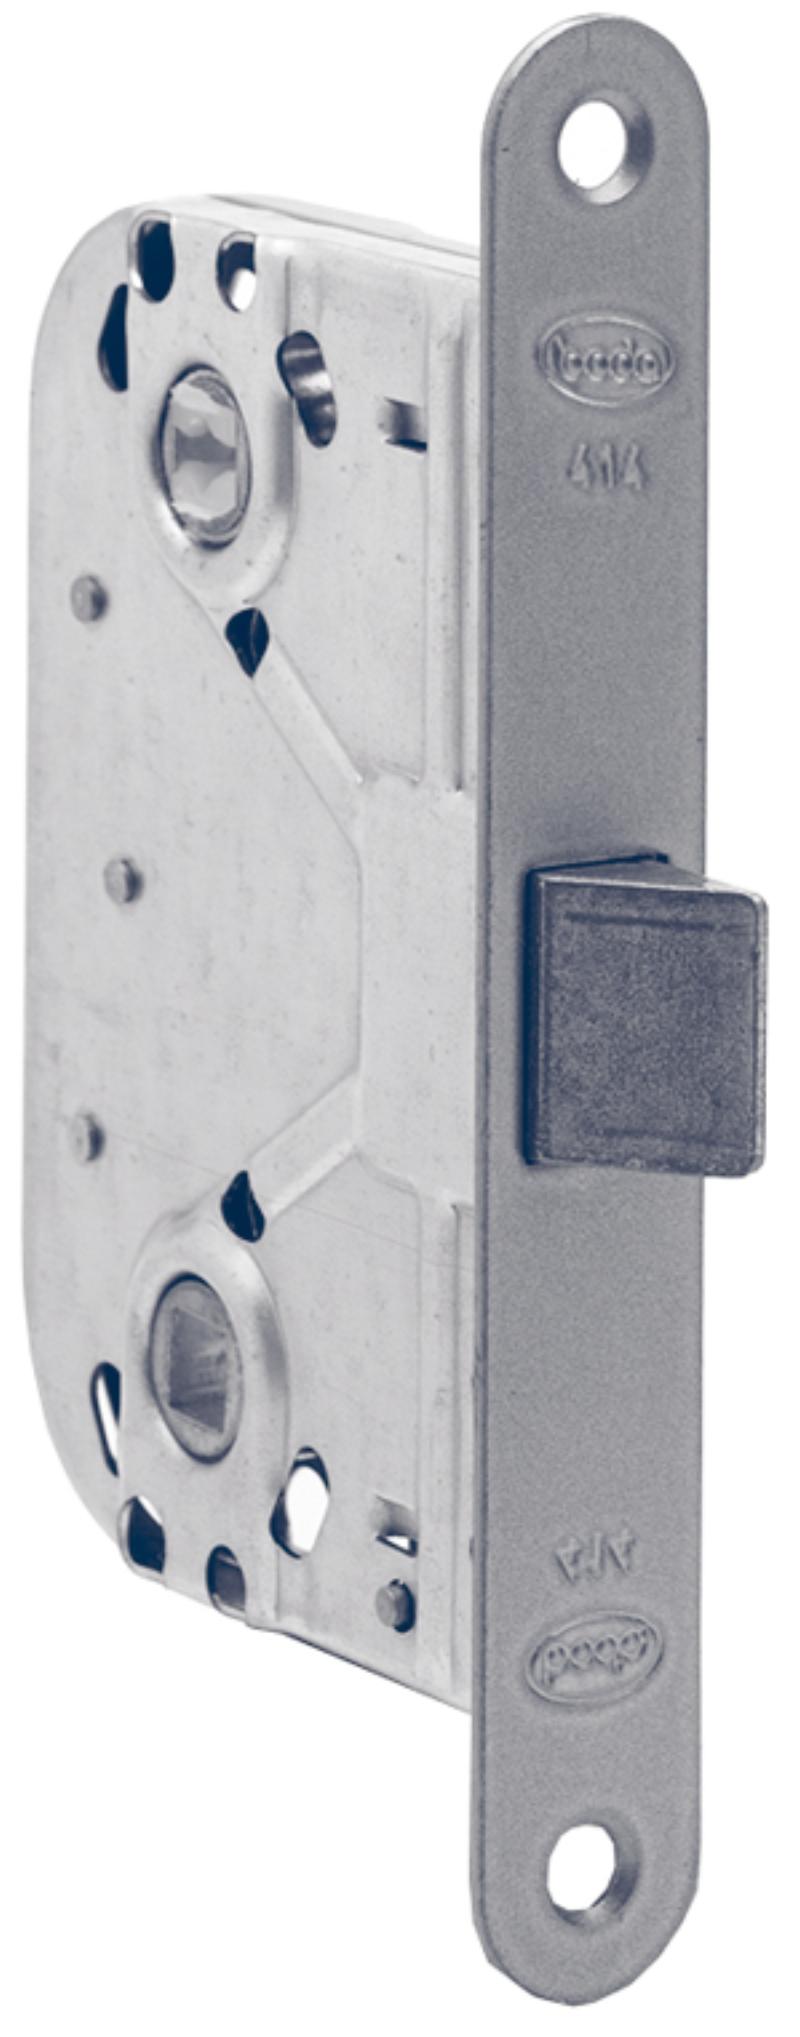 Boda intermediate door lock 414 (990501)